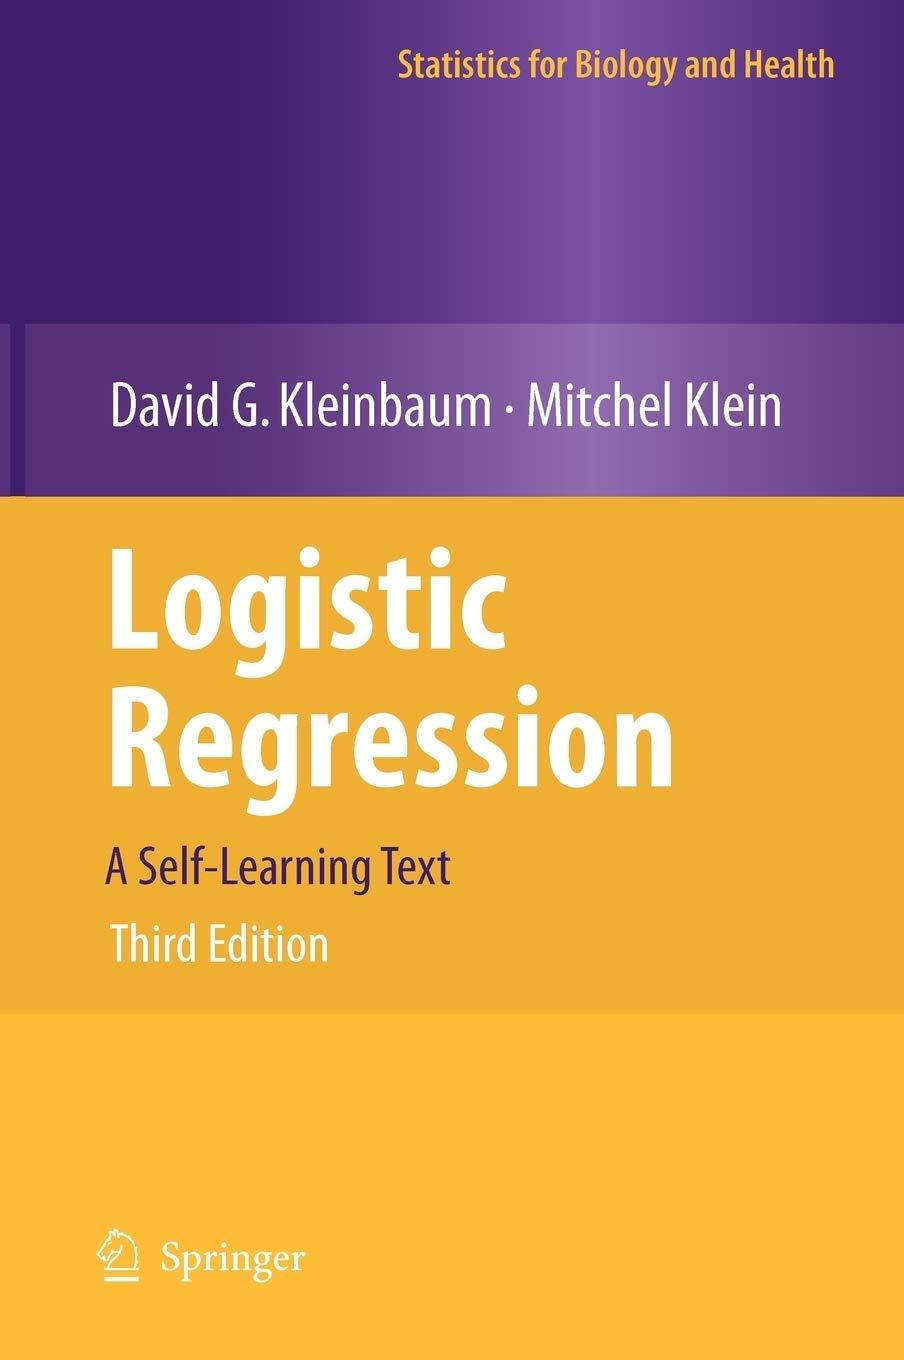 logistic regression 3rd edition david g. kleinbaum, mitchel klein 1441917411, 9781441917416